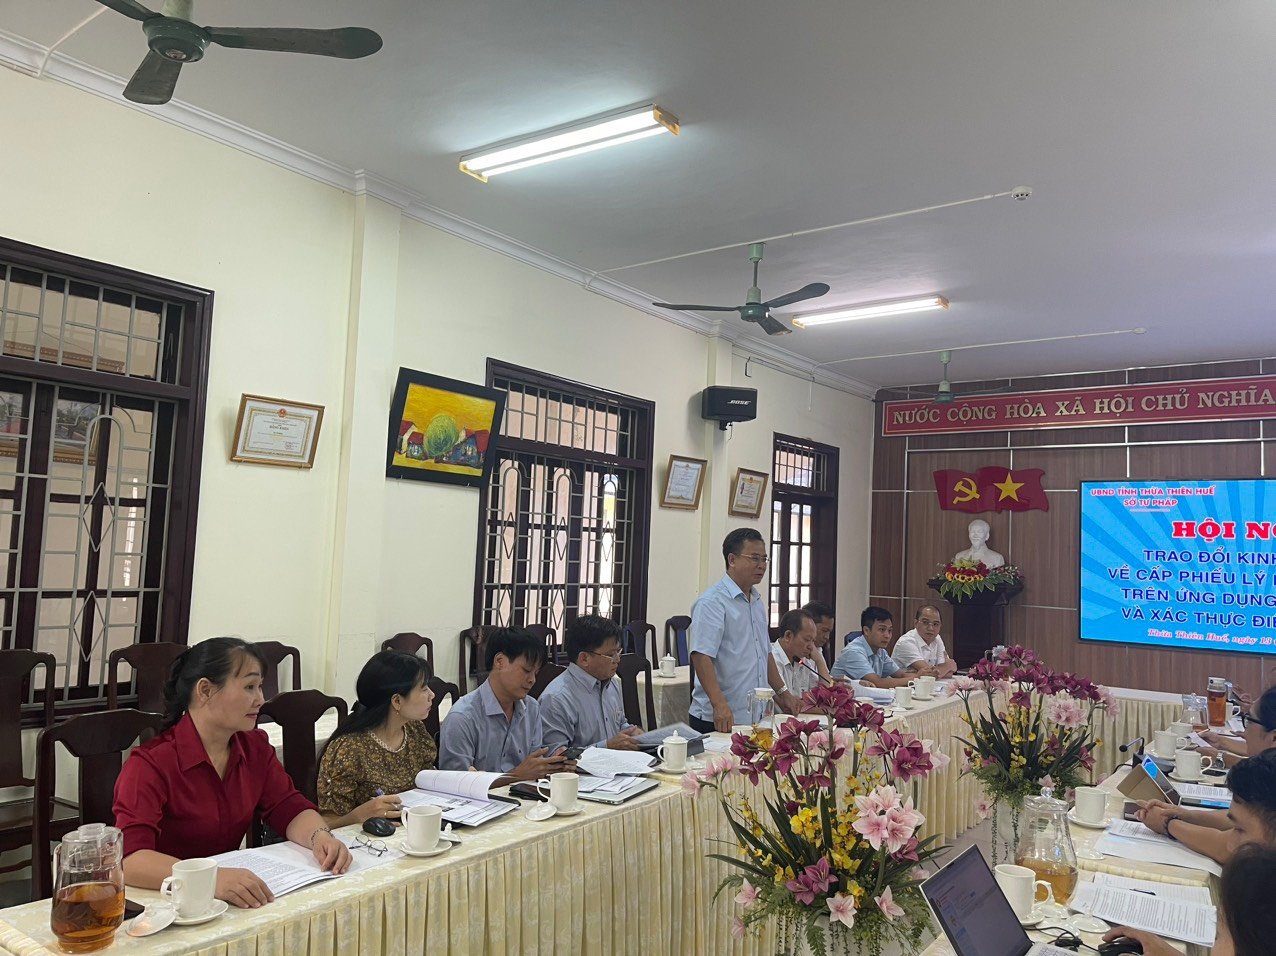 Sở Tư pháp tỉnh Bình Phước trao đổi, học tập kinh nghiệm về việc thực hiện cấp Phiếu lý lịch tư pháp trên ứng dụng định danh và xác thực điện tử VneID tại Sở Tư pháp tỉnh Thừa Thiên Huế